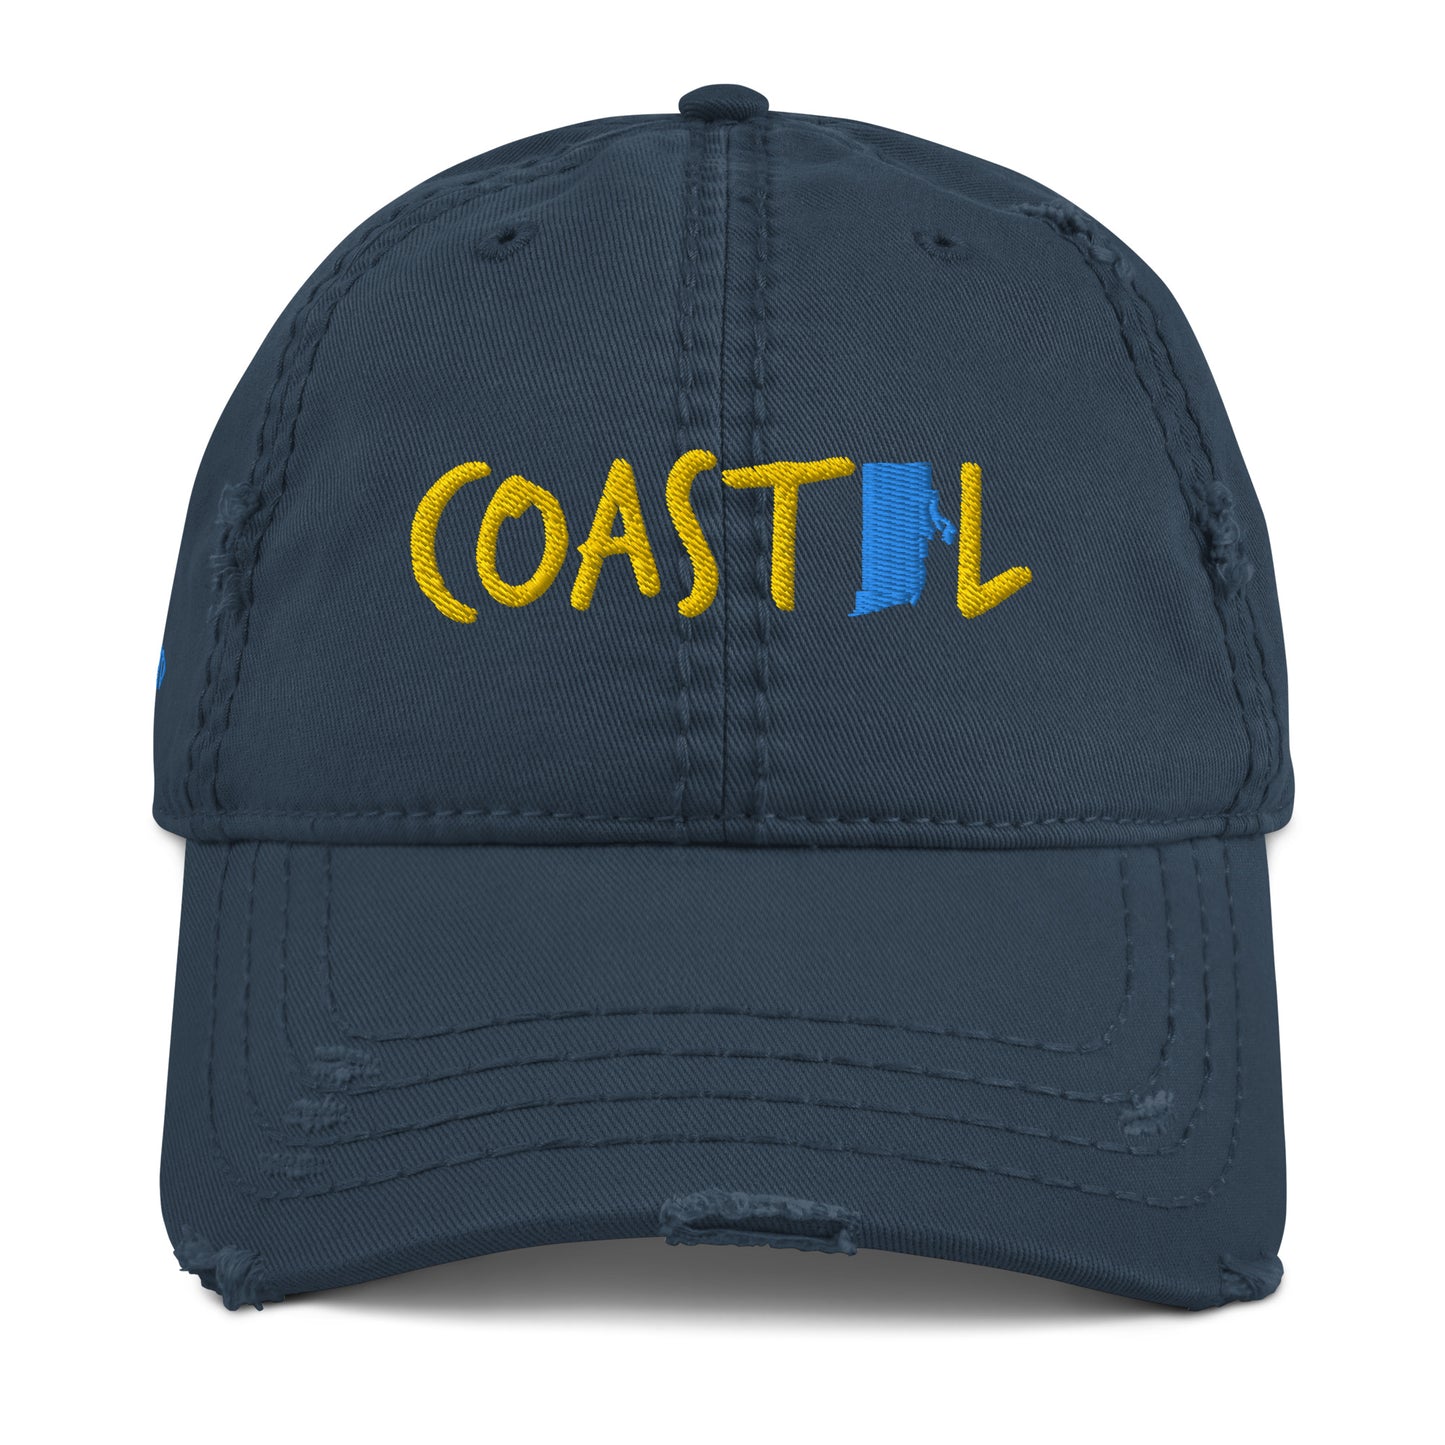 Coastal Rhode Island™ Distressed Dad Hat